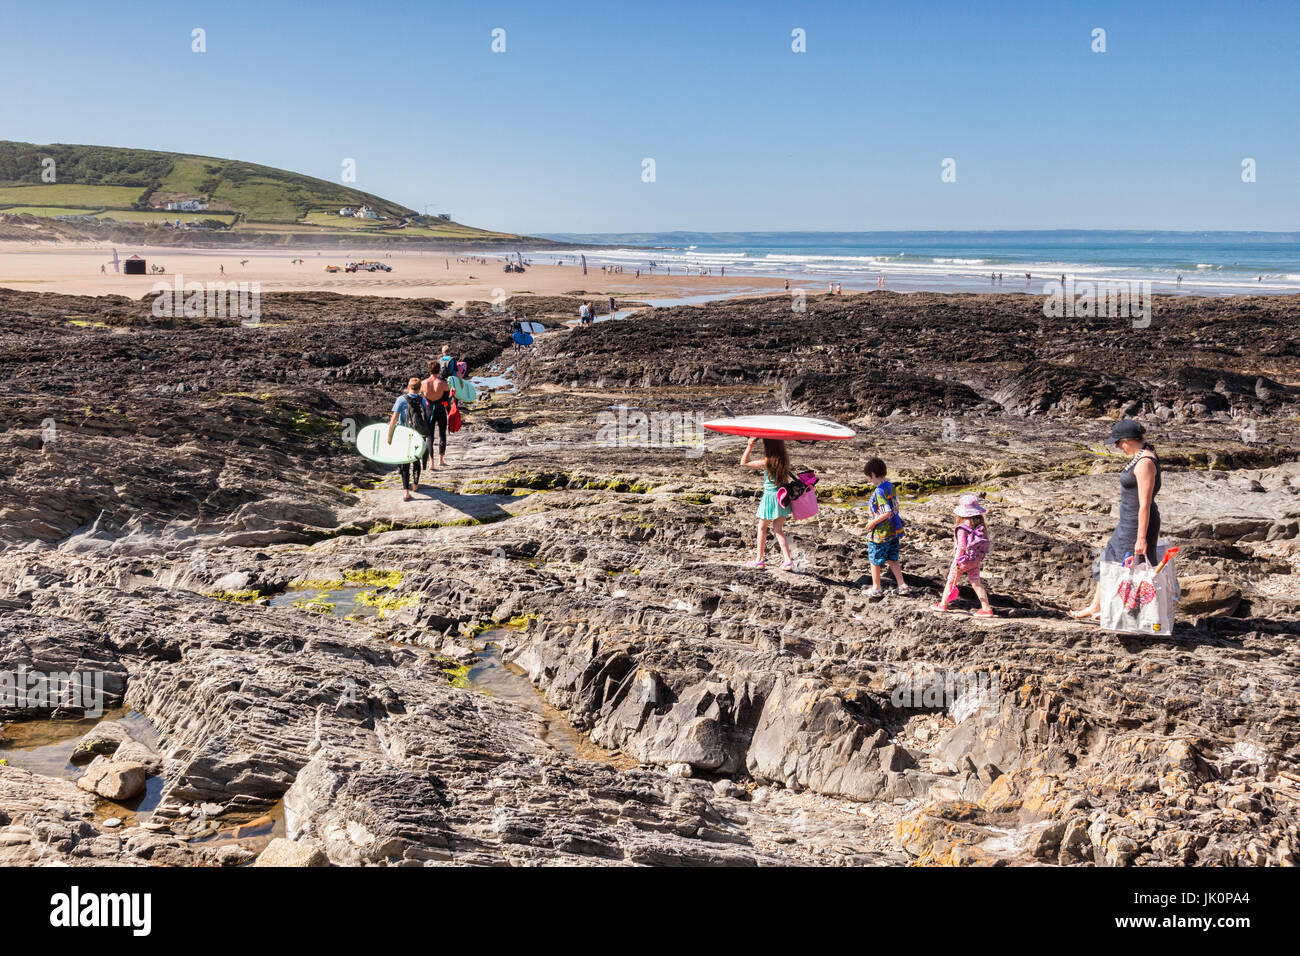 18 Giugno 2017: Croyde Bay, North Devon, Inghilterra, Regno Unito - famiglie e surfisti fanno la loro strada per la spiaggia su uno dei giorni più caldi dell'anno. Foto Stock